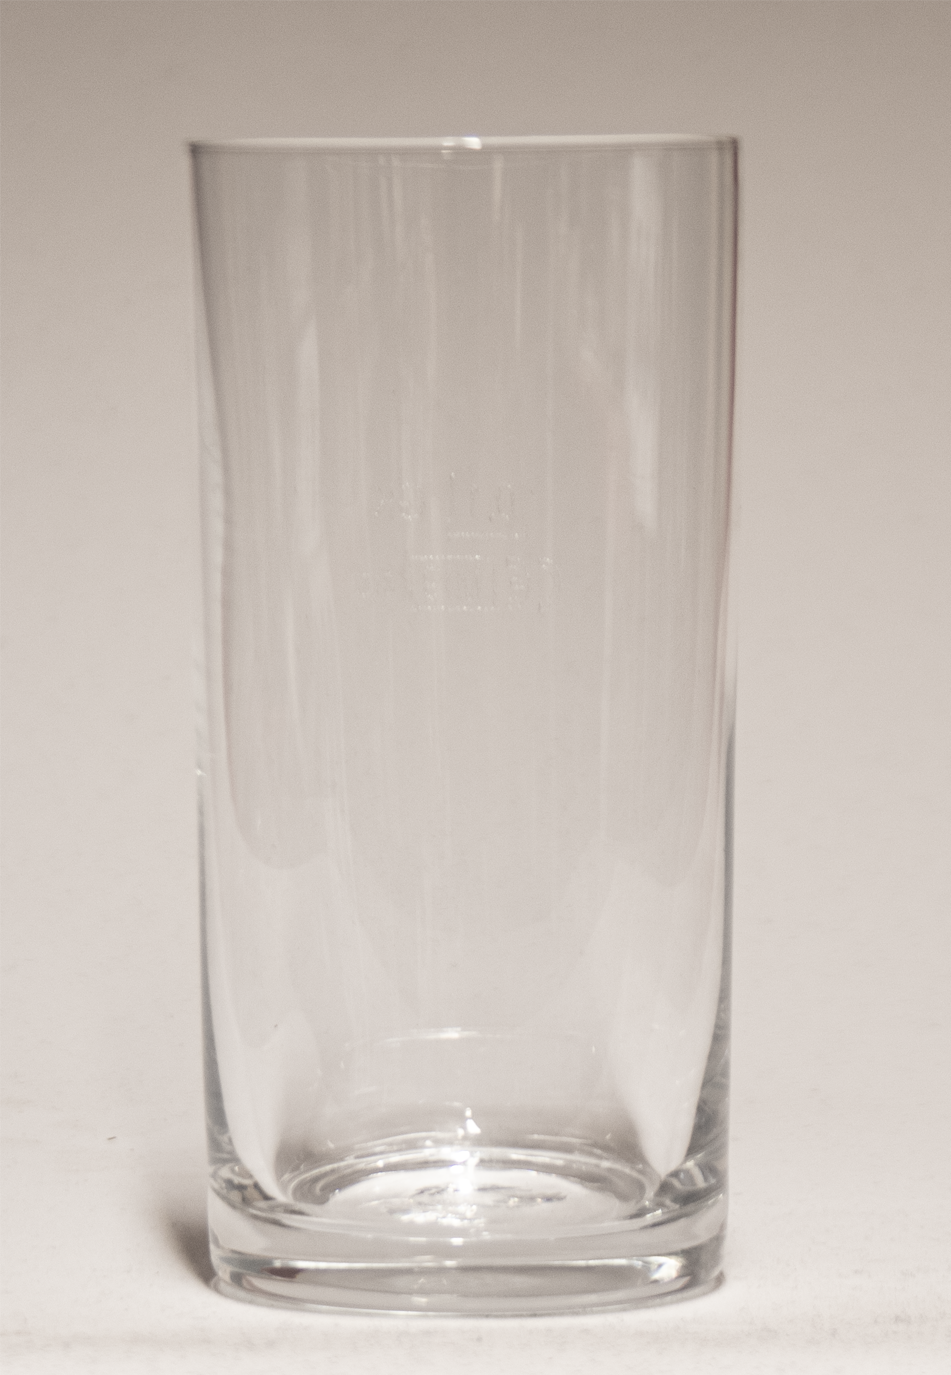 Kölschglas Kölner Stange 3534 0,1l Stösschen individuell bedruckt